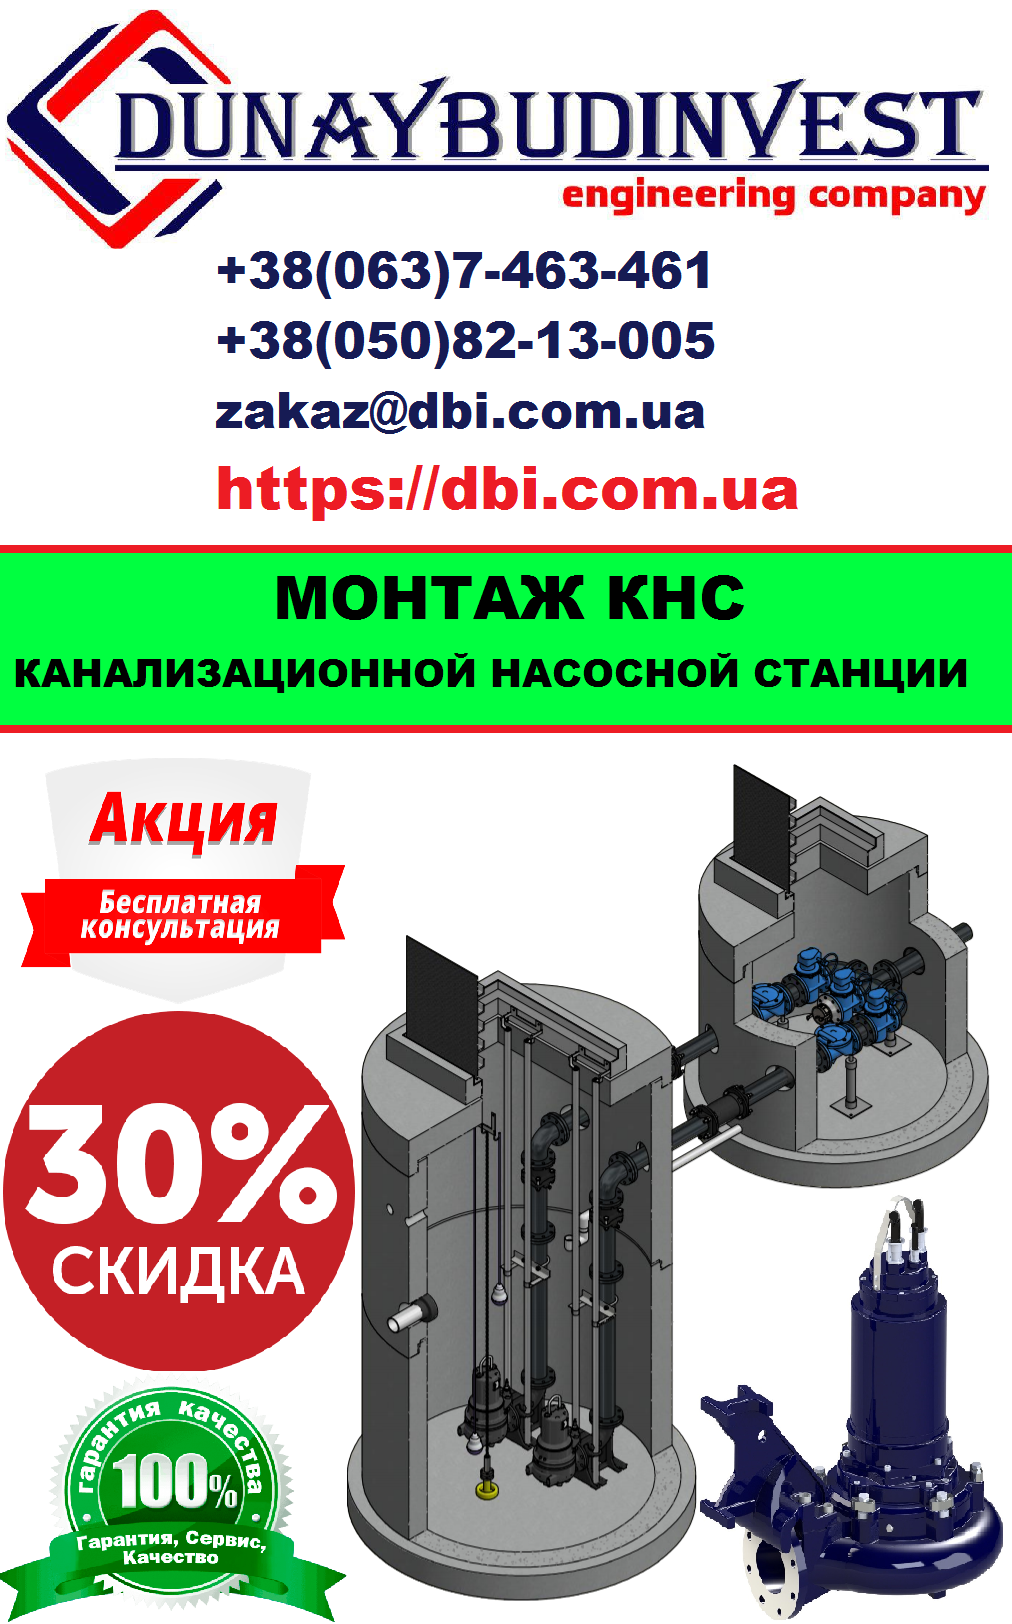 Монтаж и установка КНС (канализационной насосной станции) киев